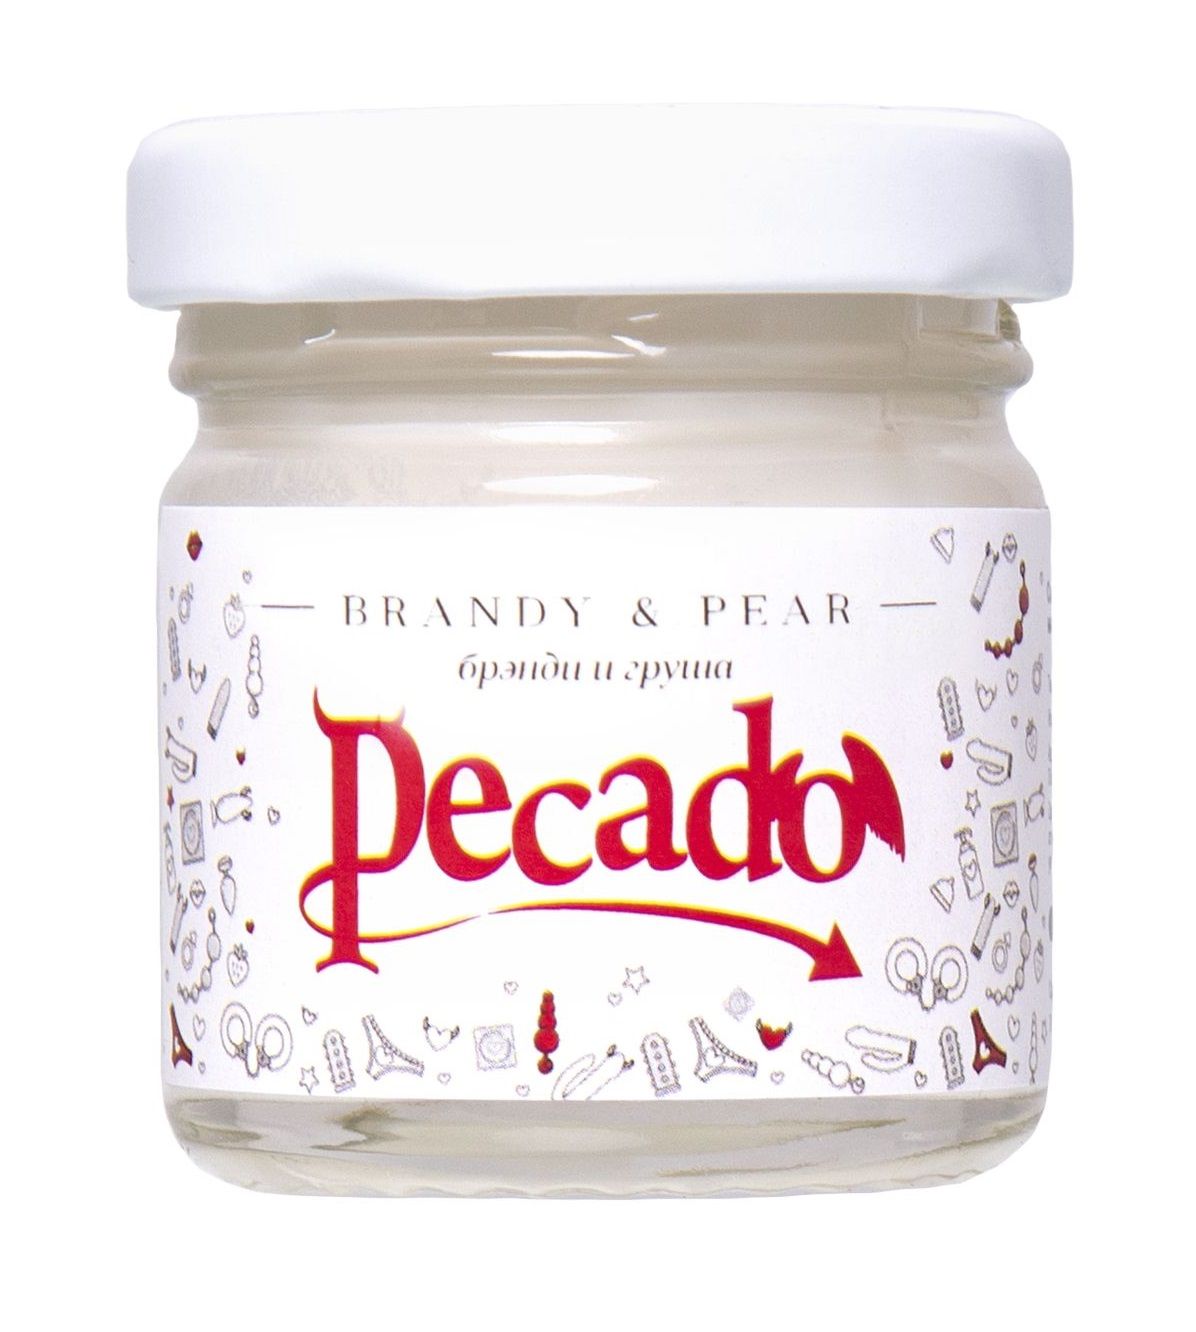 Массажная свеча Brandy & Pear от Pecado – маленький помощник, для разнообразия прелюдий любого романтического вечера. С ним каждое касание к коже нежное и желанное. Просто зажгите свечу, и наполните комнату возбуждающим, легким ароматом. Дождитесь пока расплавится масло, погасите пламя, нанесите на кожу. И насладитесь чувственными прикосновениями, сделанный руками или обнаженным телом любимого партнера. <br><br>  Массажная свеча изготовлена полностью из безопасных материалов вручную. Теплое масло не обжигает, так как температура плавления составляет 40 градусов. Оно хорошо распределяется, благодаря нежной и не липкой текстуре. Отлично впитывается и увлажняет кожу. После нанесения на теле не остается ощущение «пленки». При попадании на ткань, легко смывается горячей водой. <br><br>  Свеча легкая, компактная, занимает мало места и ее удобно брать с собой в путешествие. Маленькая баночка с минималистичным дизайном аккуратно впишется в любой интерьер помещения. Можно использовать для массажа, самомассажа, домашнего СПА-ухода, а также в качестве увлажняющего косметического средства. С массажной свечой от Pecado, ваши прелюдии станут запредельно возбуждающими.